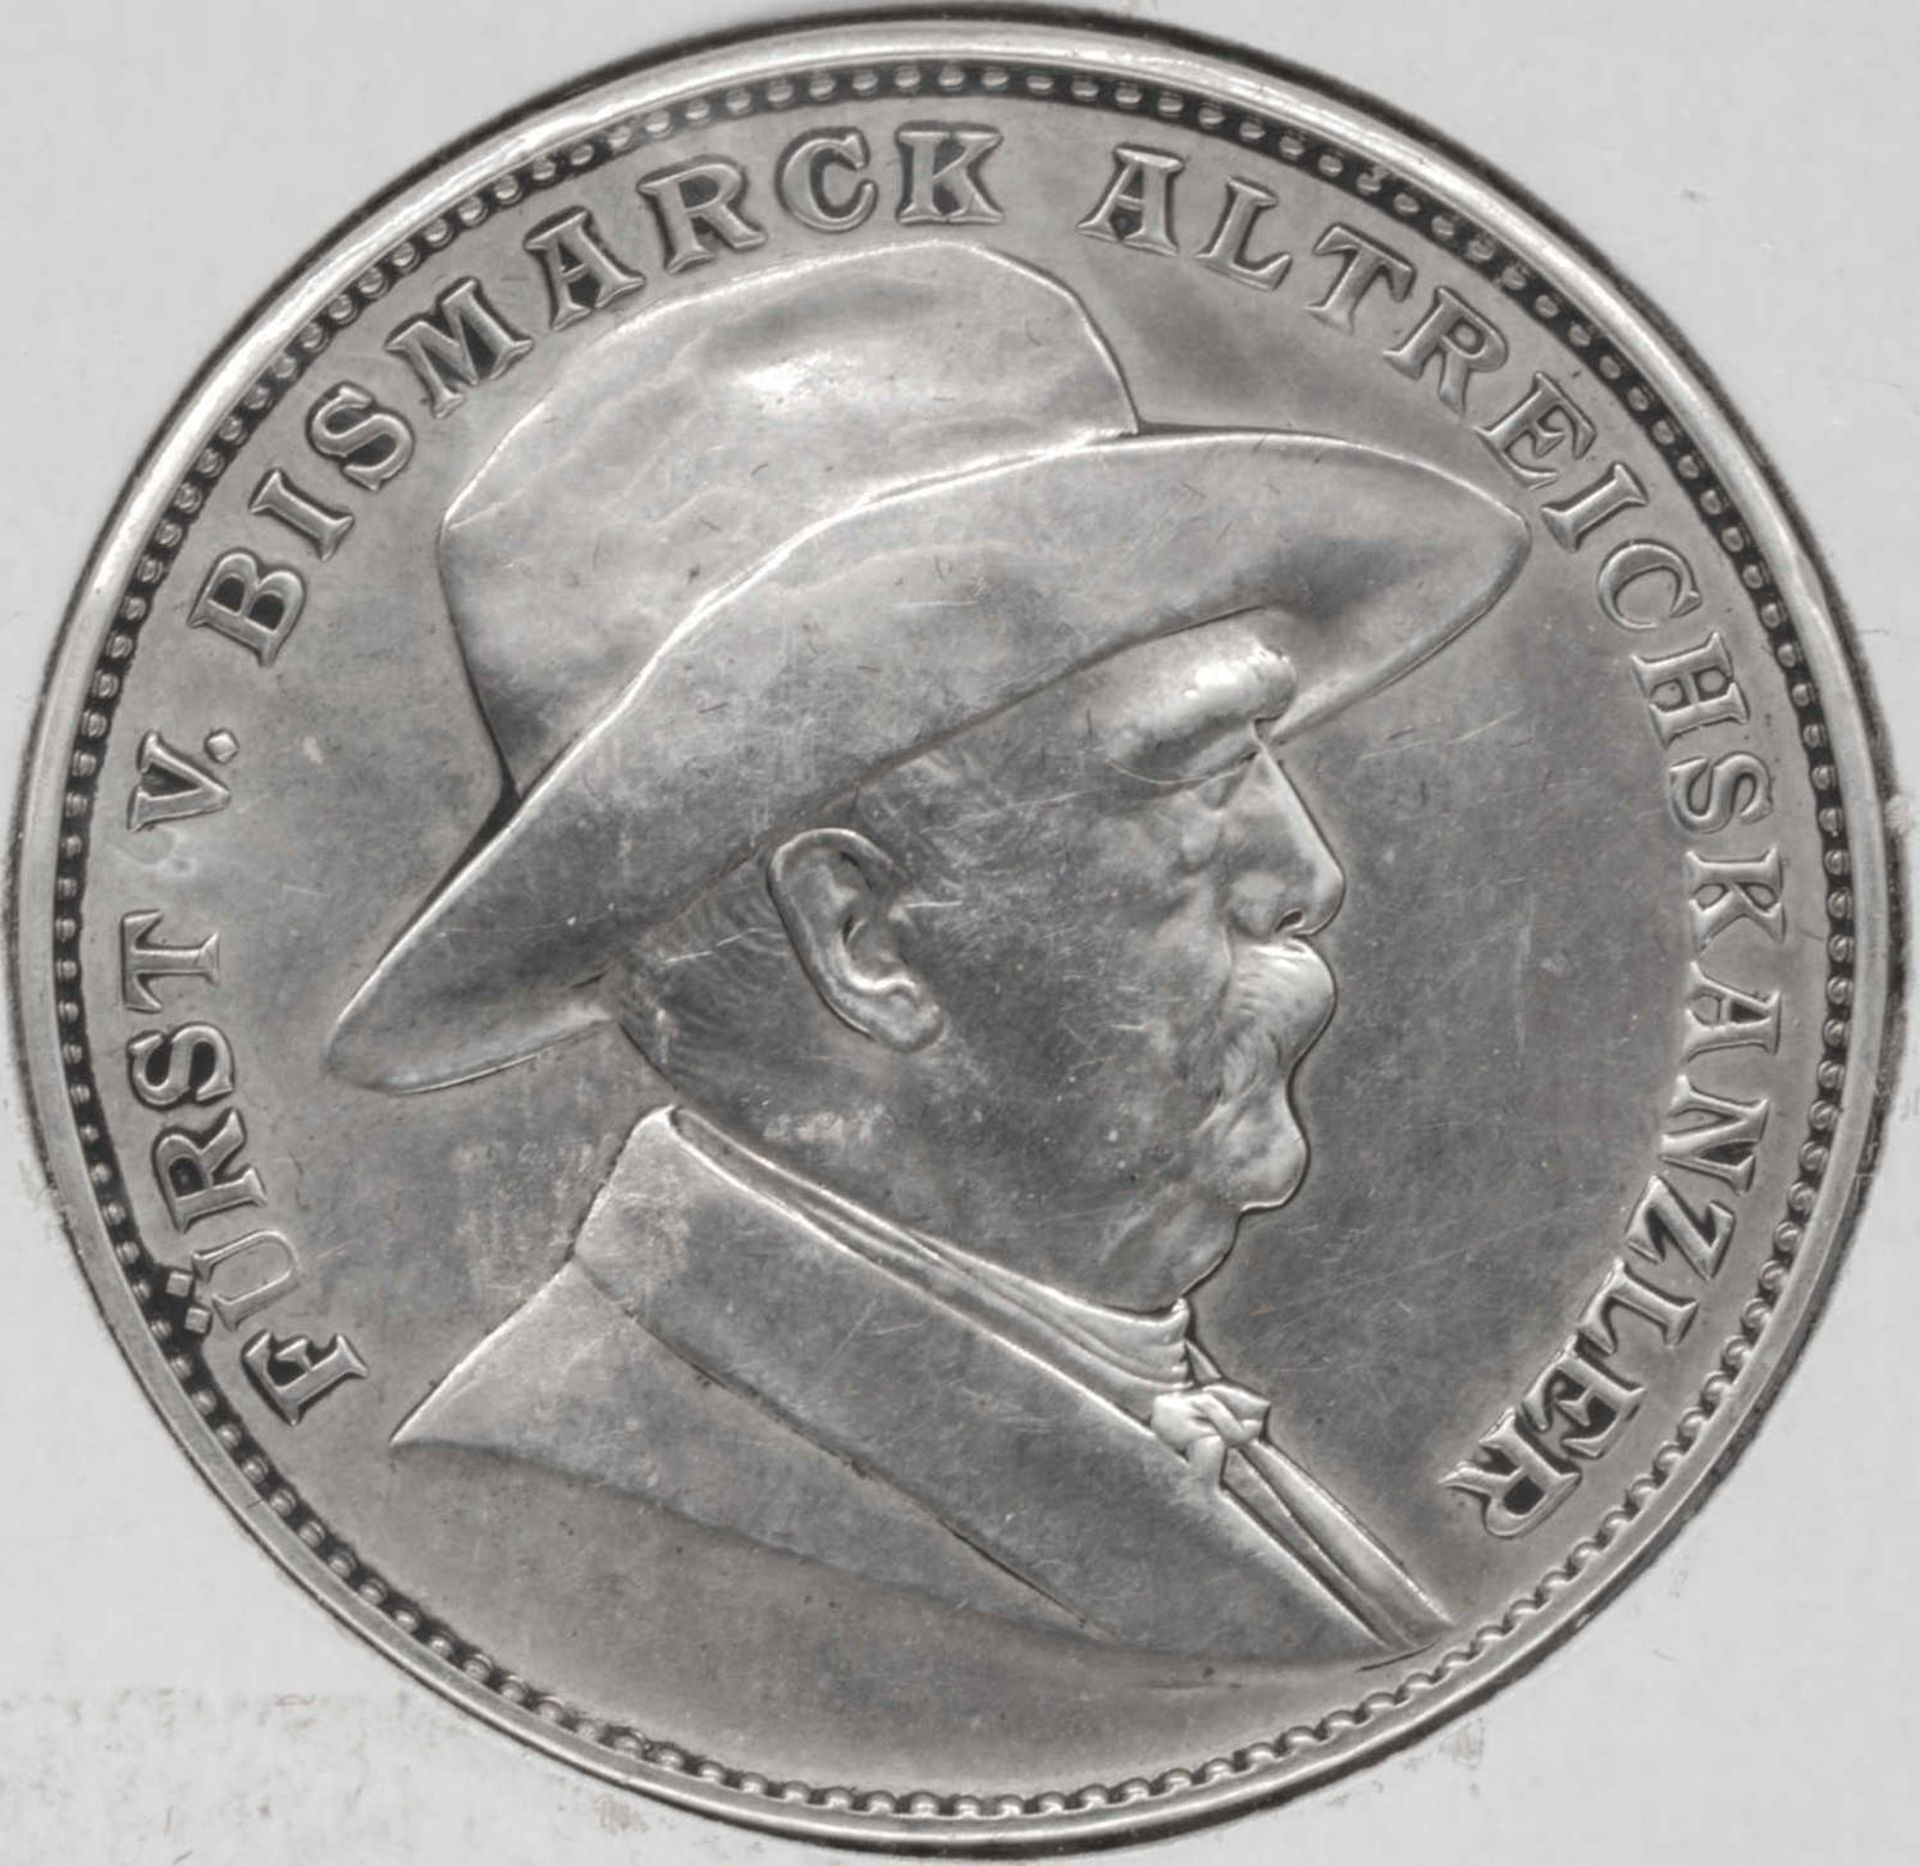 Otto v. Bismarck, Silbermedaille 1895, auf seinen 80. Geburtstag, Bennert 162. Slg. Bö. 5323. - Bild 2 aus 2